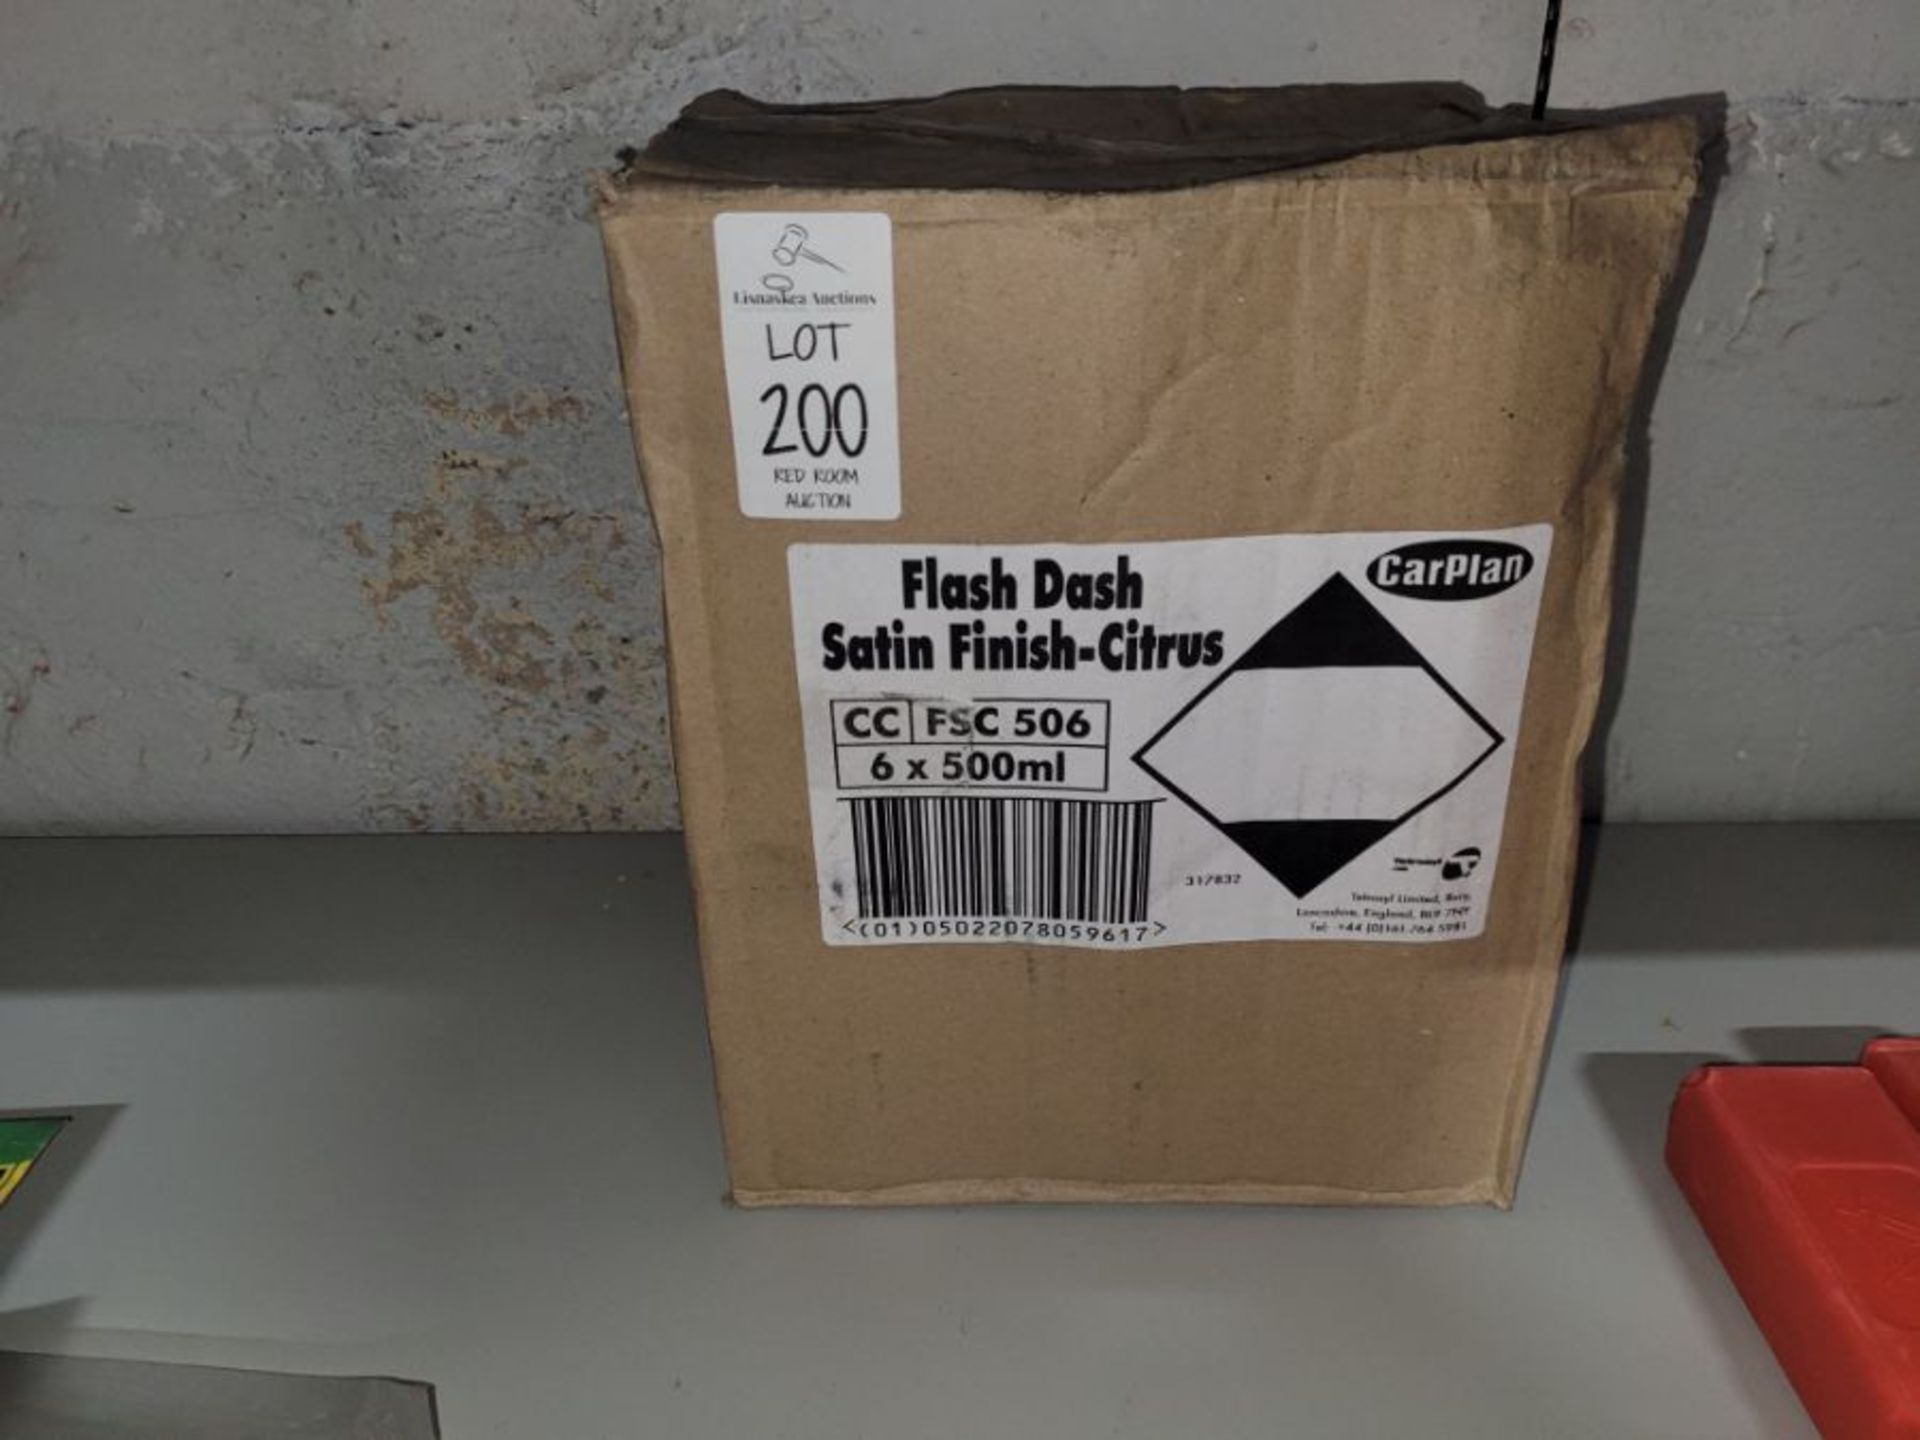 BOX OF 6 FLASH DASH SATIN FINISH CITRUS